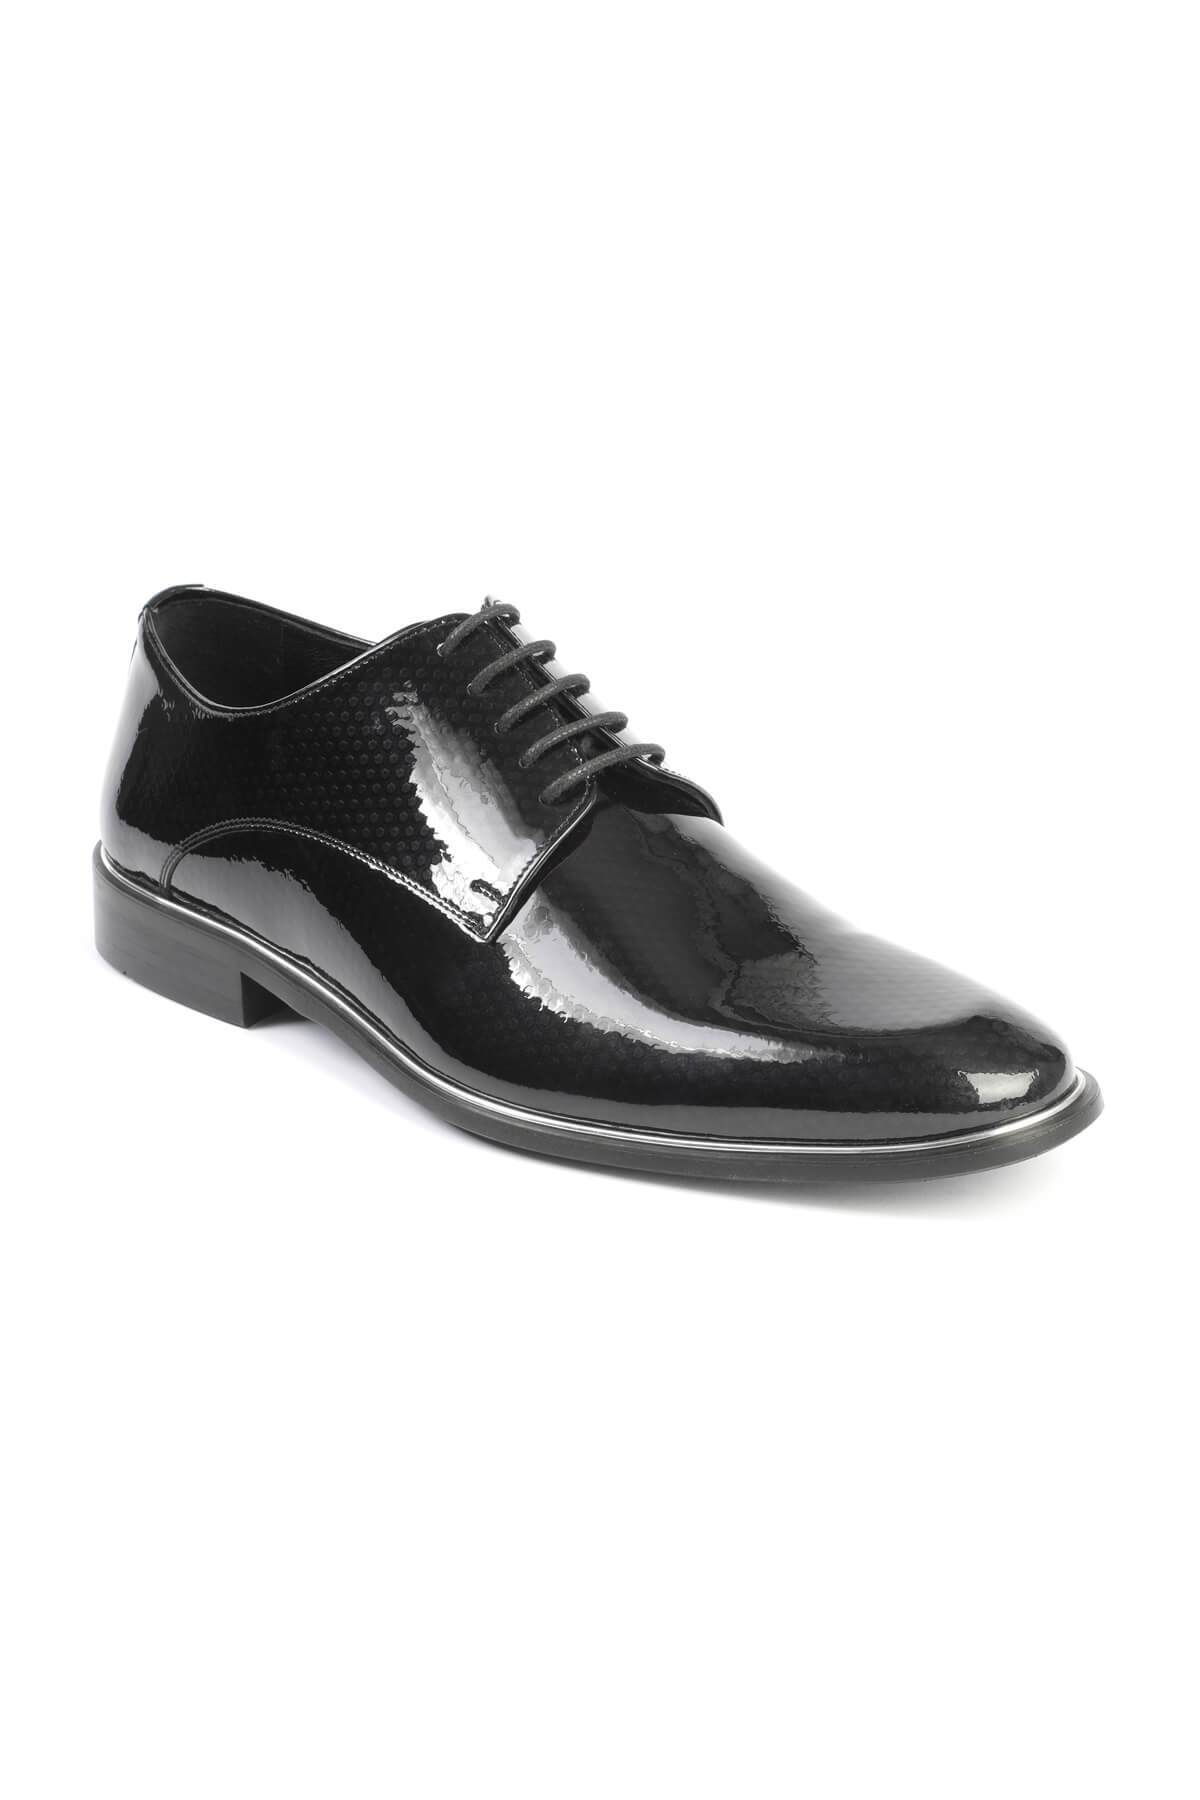 Libero 2140 Klasik Erkek Ayakkabı LACİVERT - Siyah